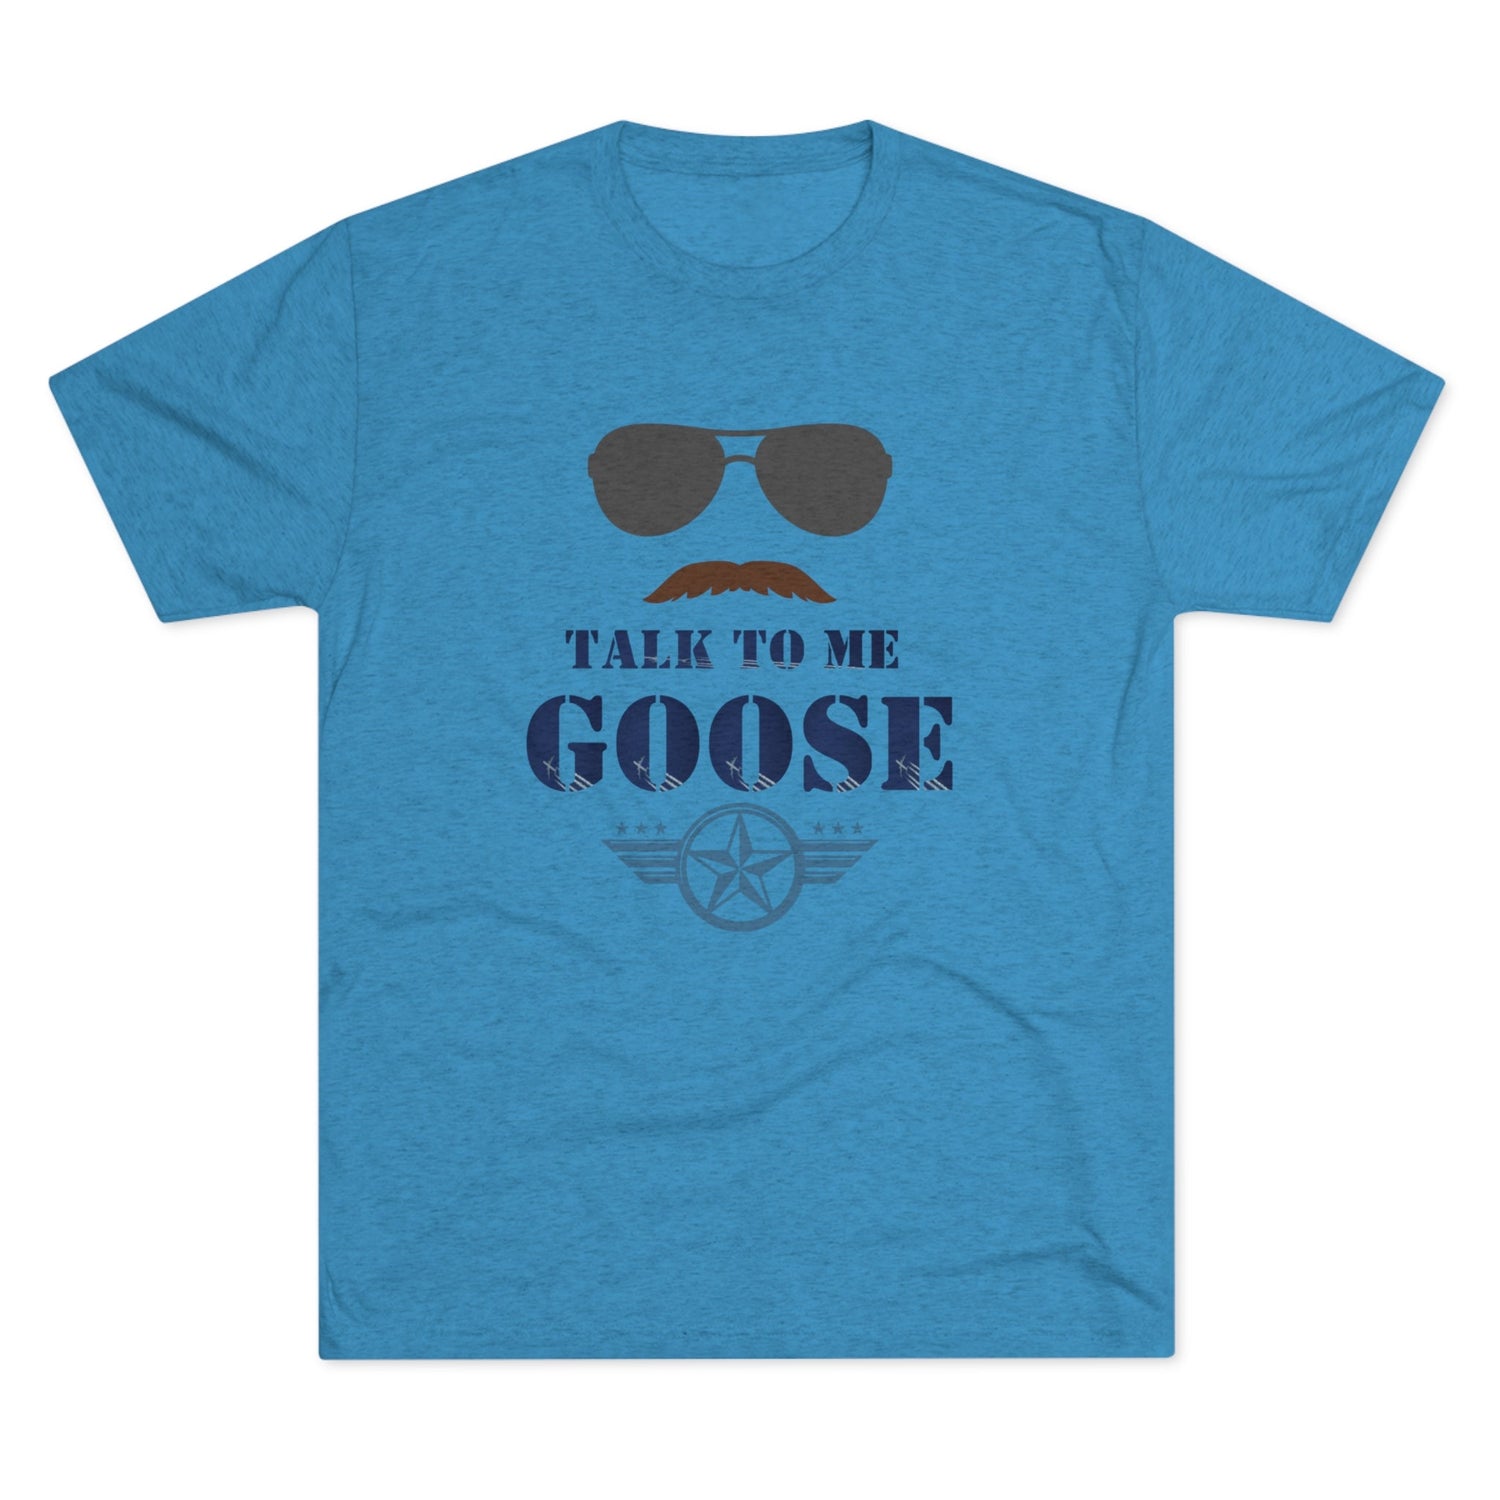 Talk to Me Goose - Unisex Tri-Blend Crew Tee - Whiskey Cotton LLC